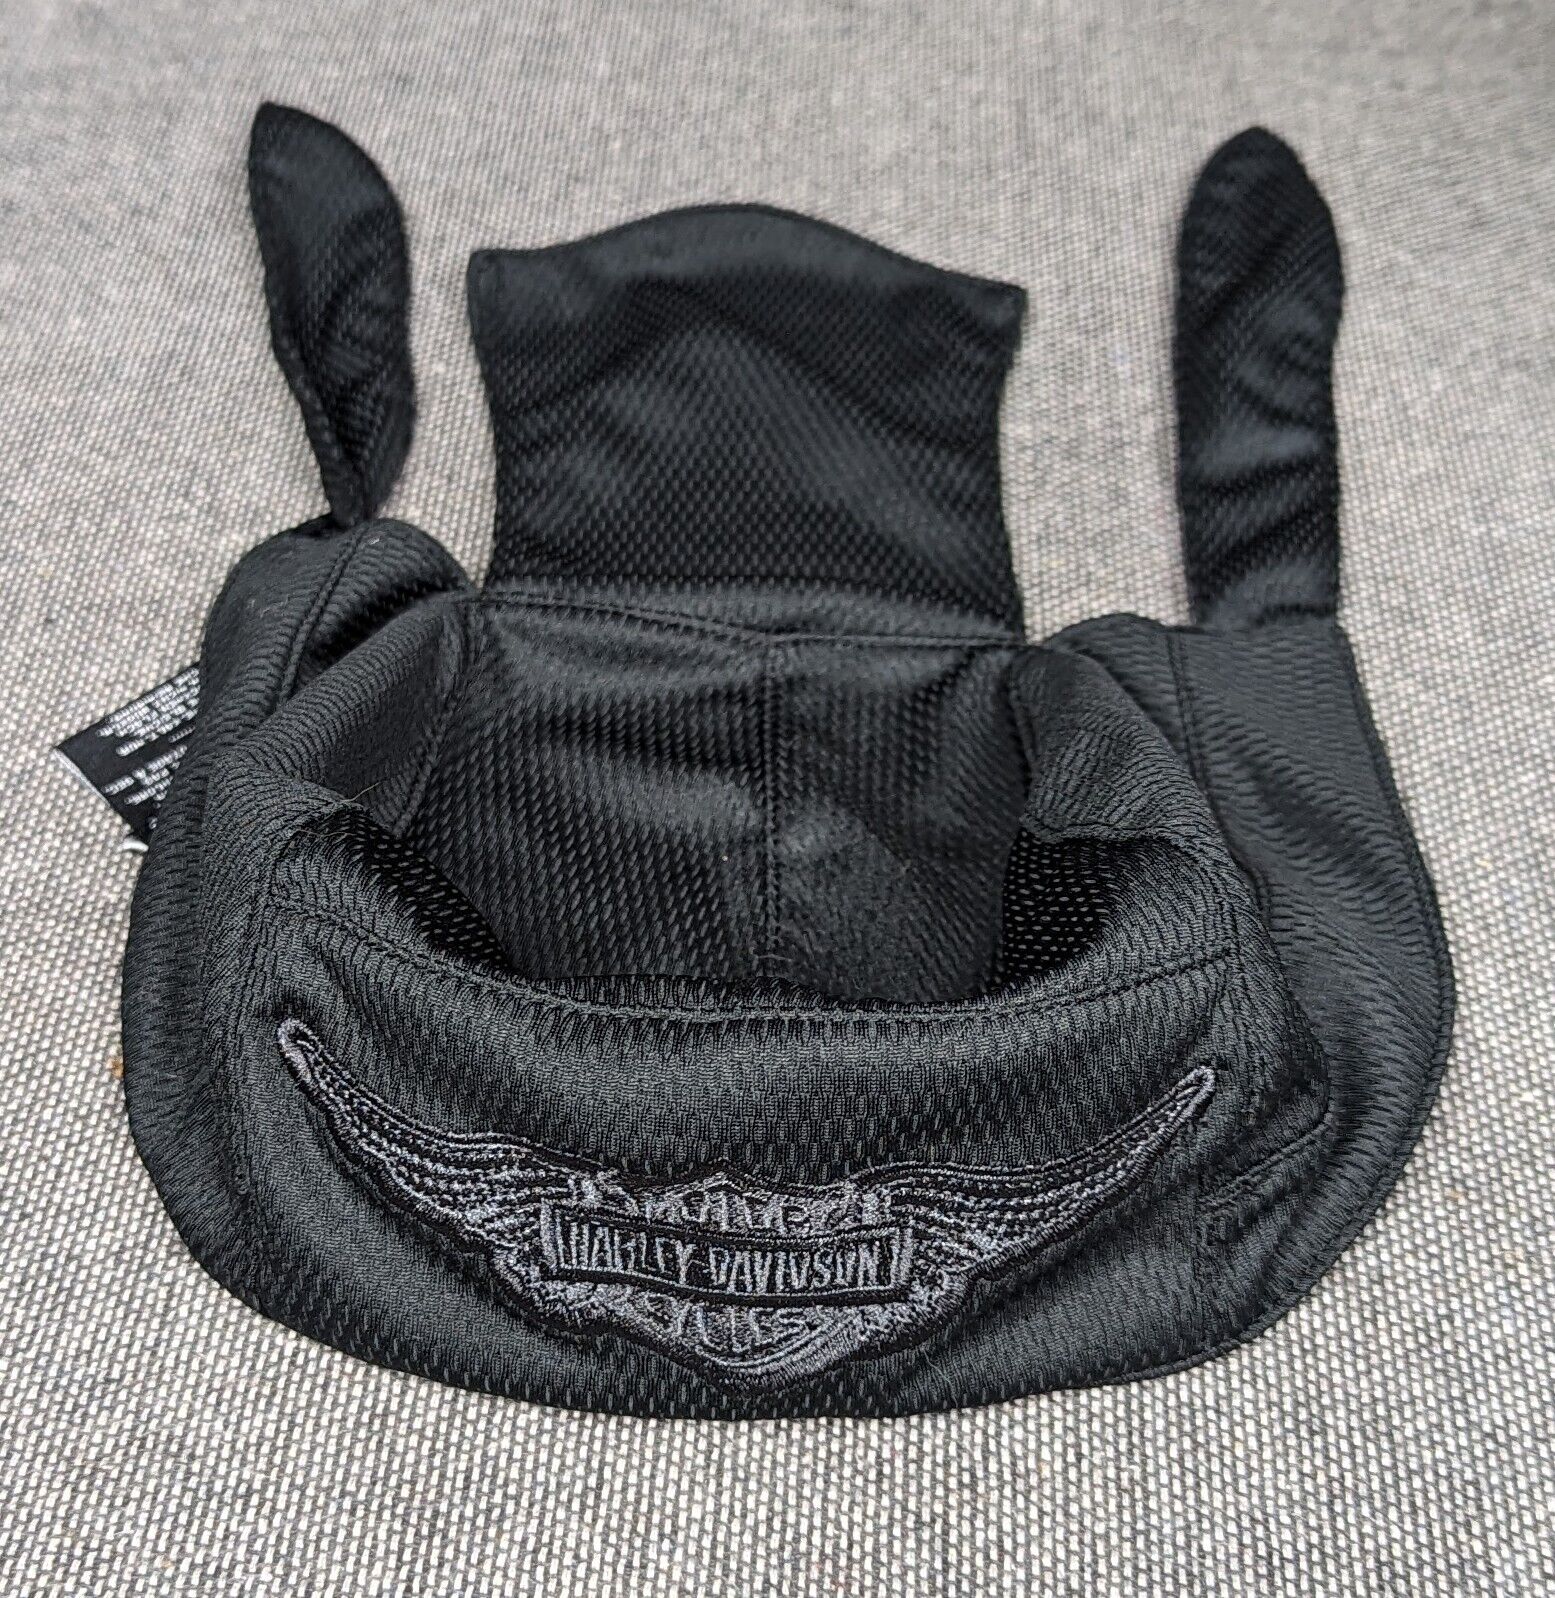 Harley Davidson Black Headwrap Skull Cap With Emblem Large